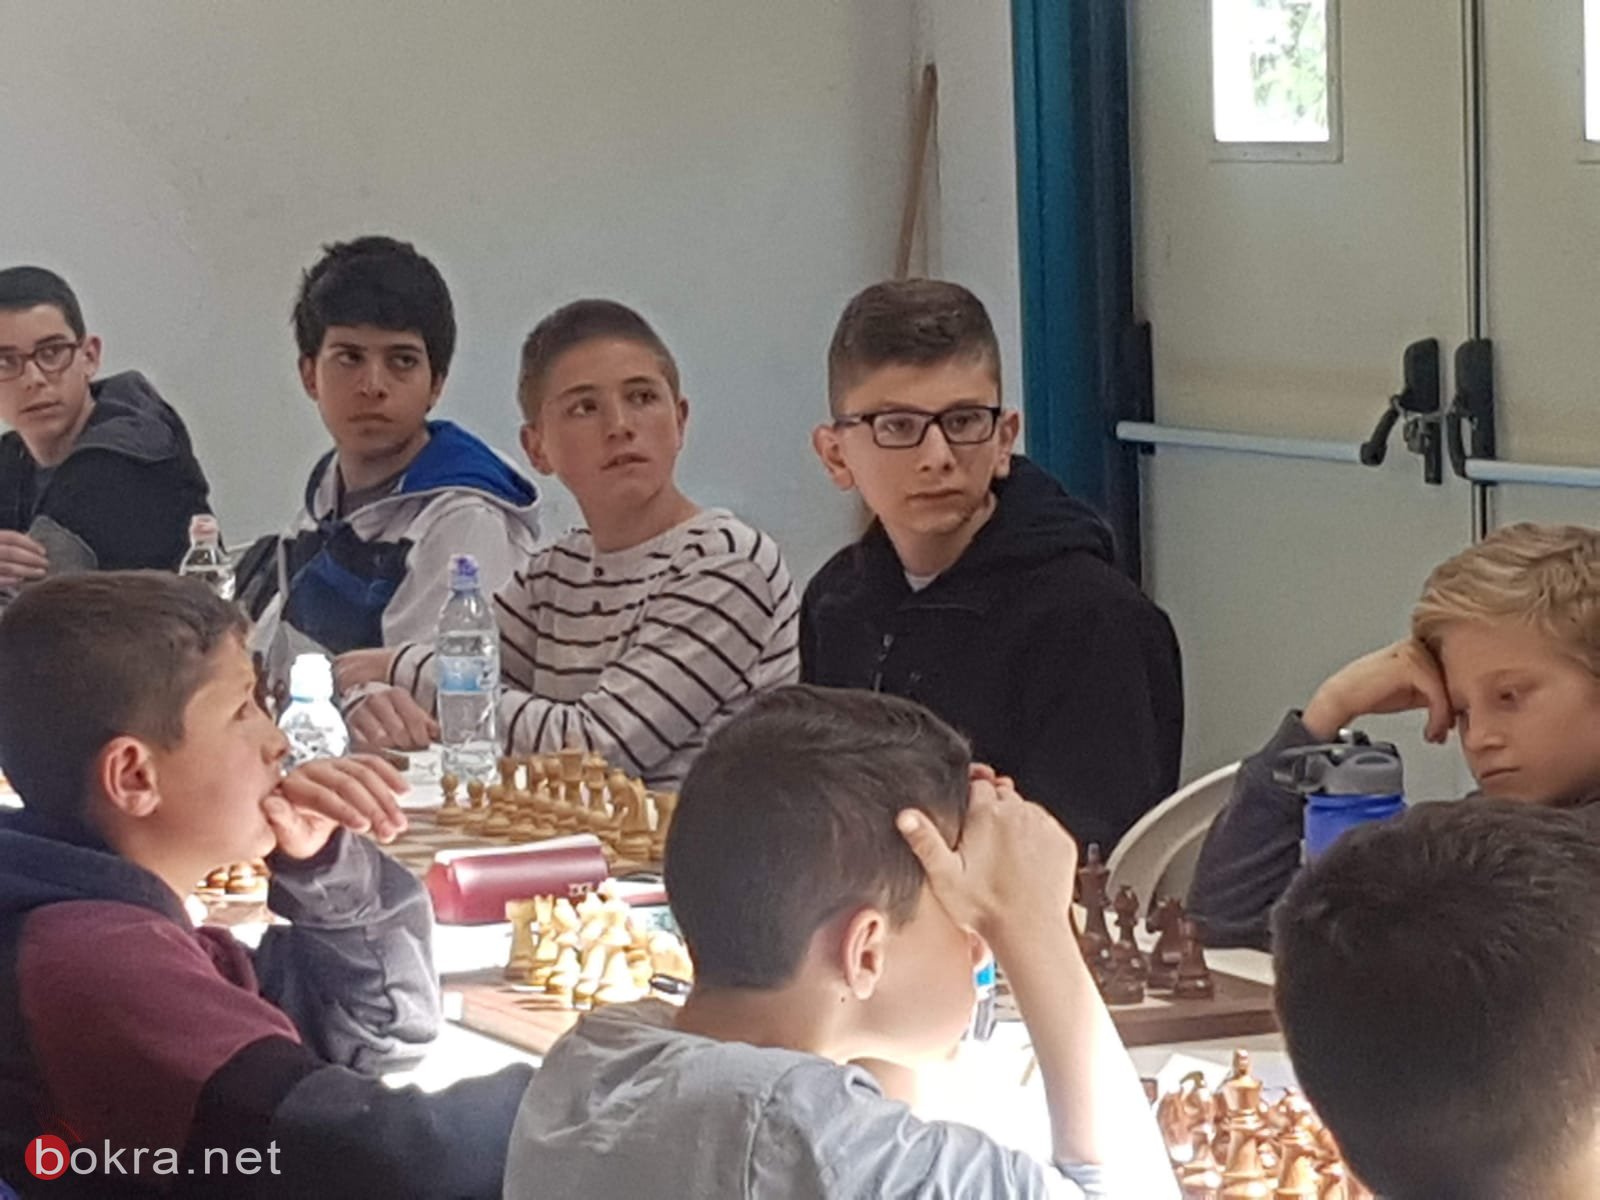 جهاد ربيع زعبي من الناصرة يحصد المرتبة الأولى في الشطرنج-3